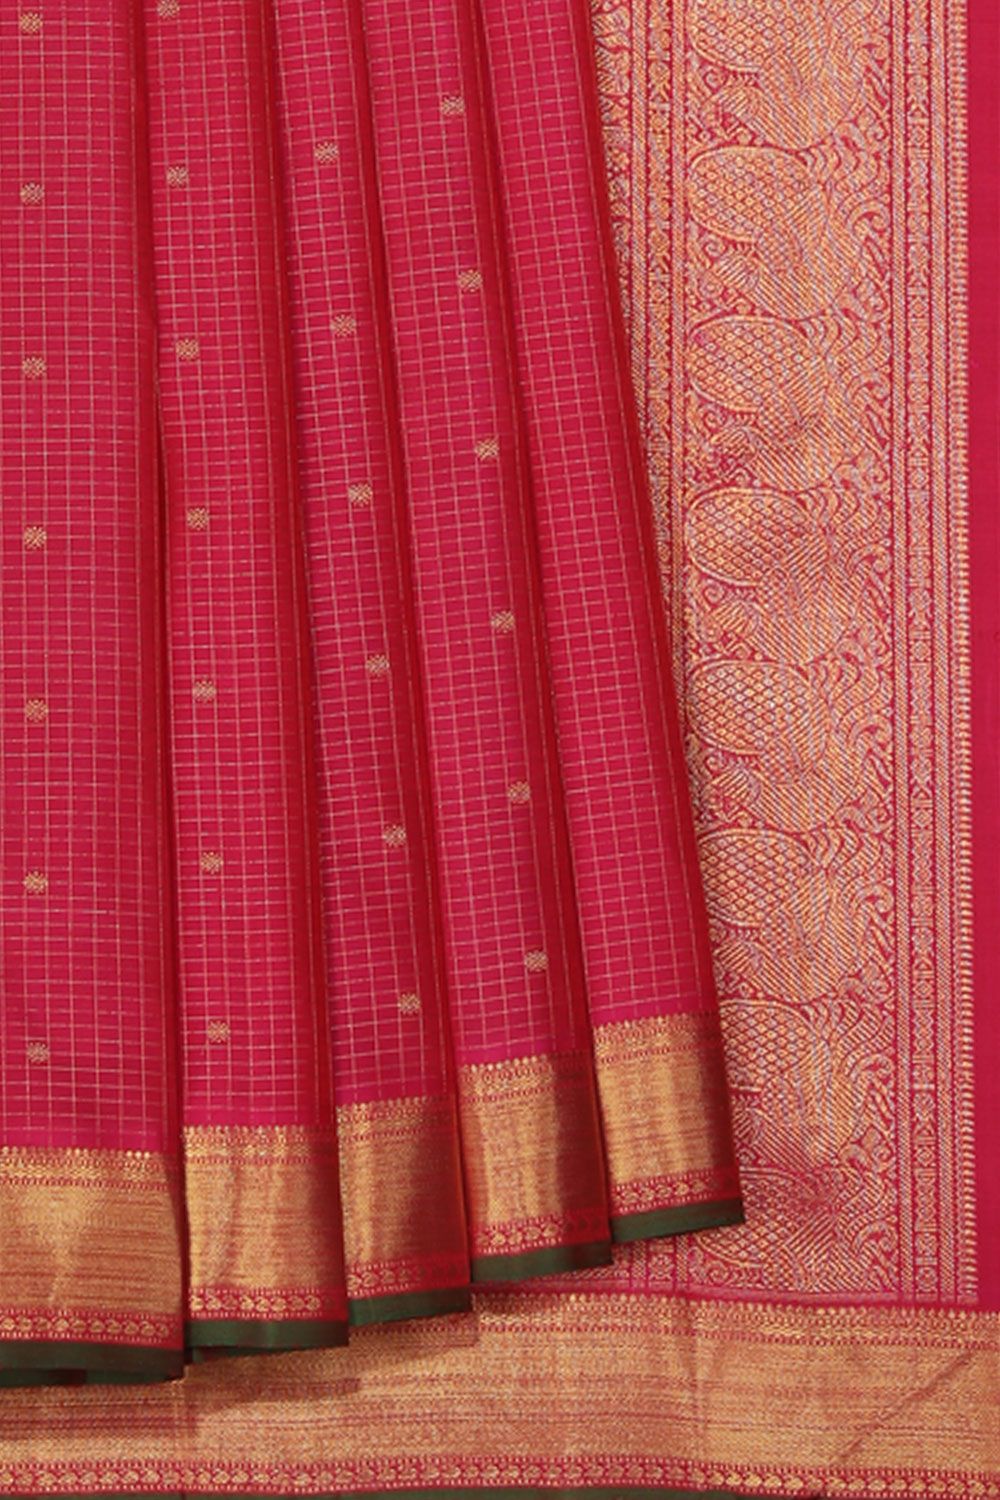 Purasawalkam Madharsha sarees at 340 /- only | Daily wear sarees Designer  sarees cotton sarees - YouTube